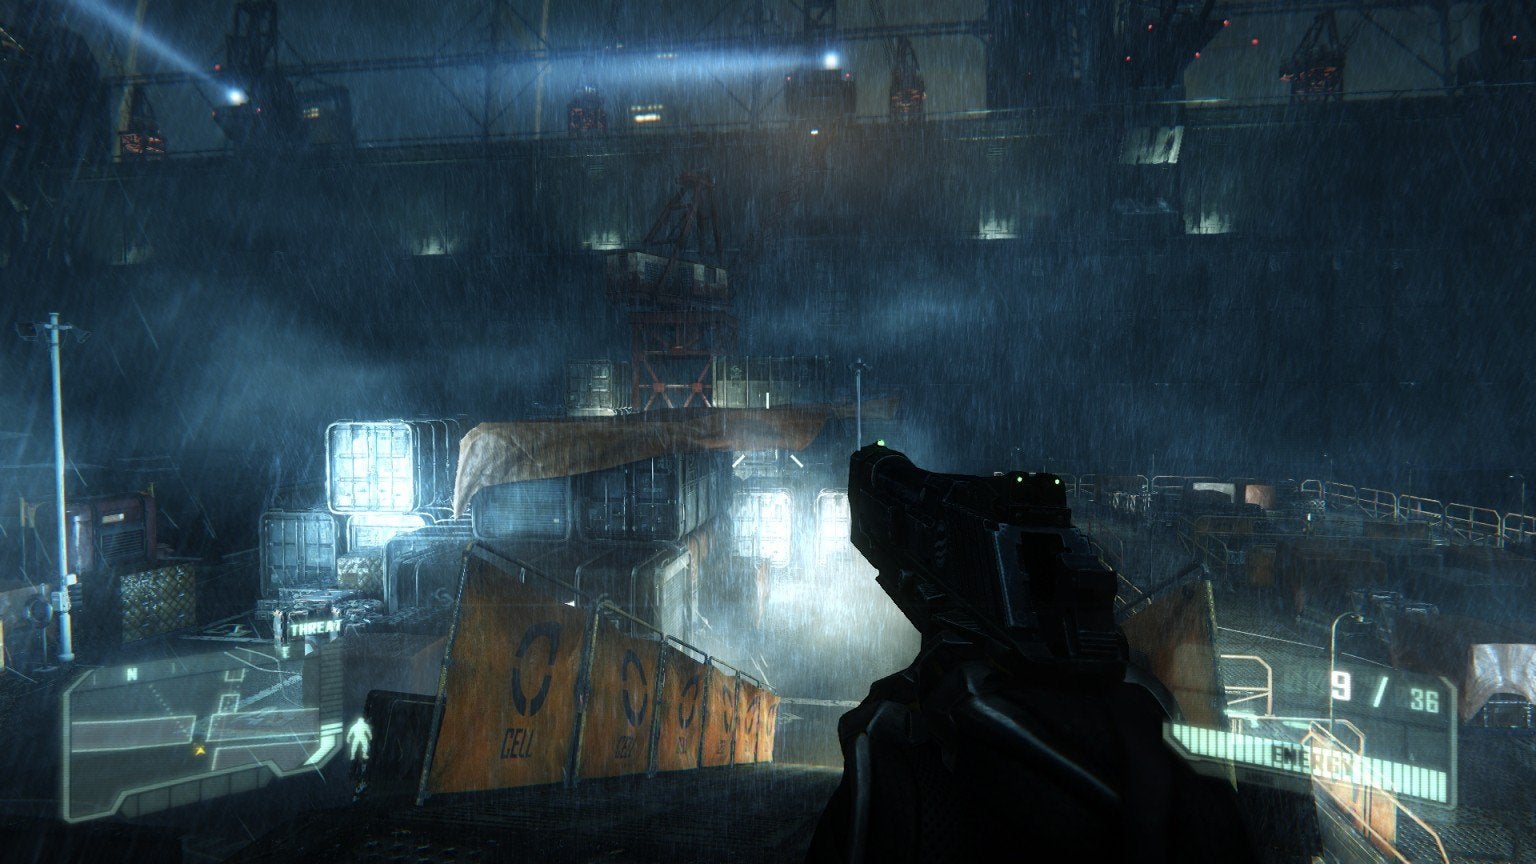 Crysis screenshot